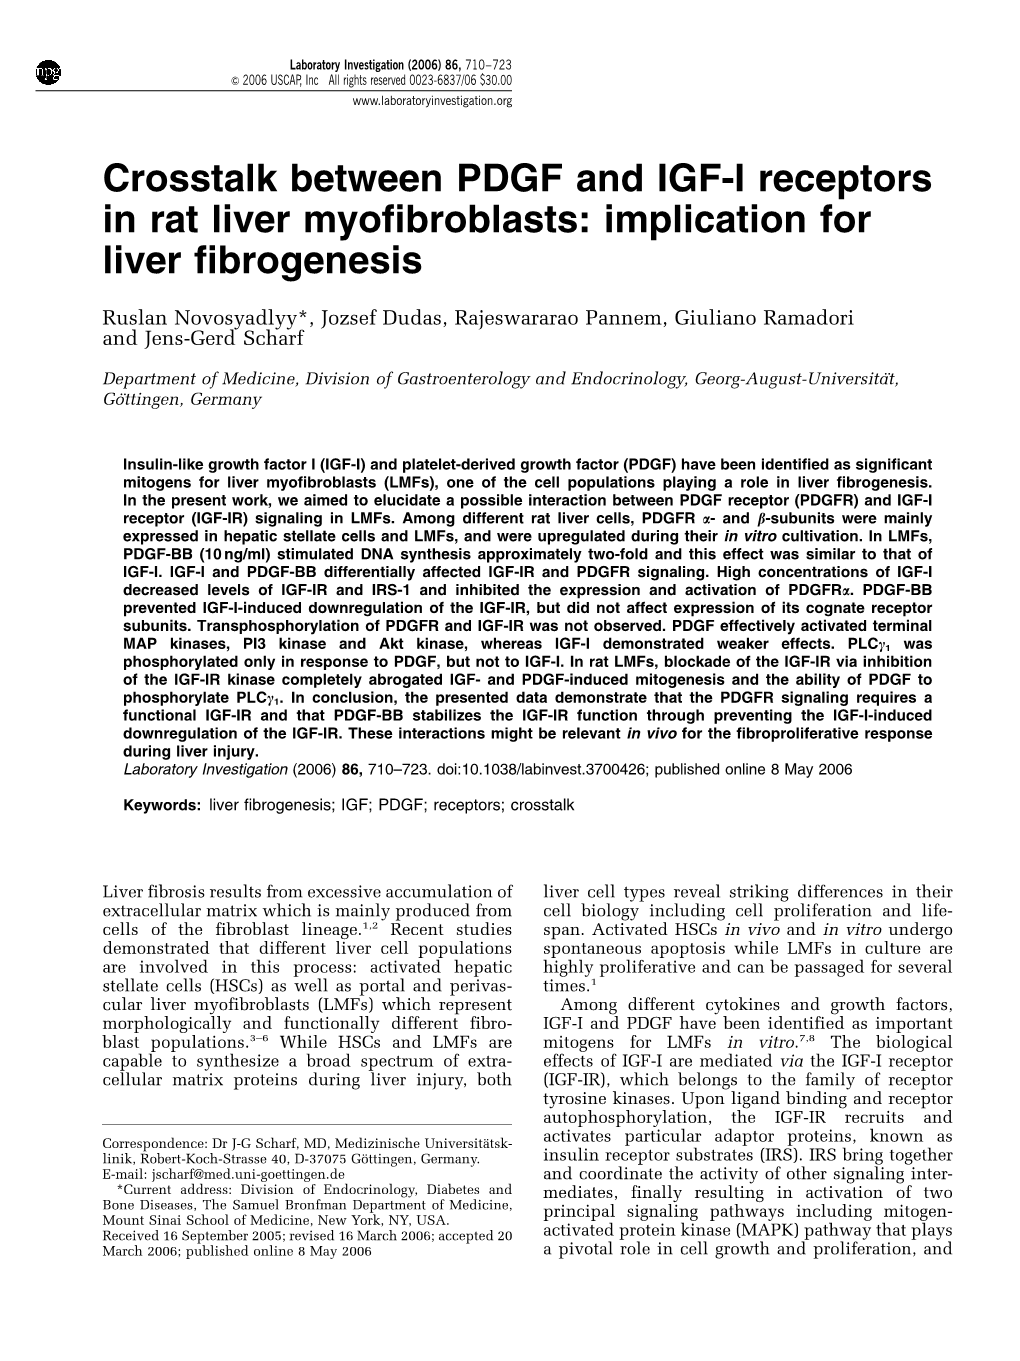 Crosstalk Between PDGF and IGF-I Receptors in Rat Liver Myofibroblasts: Implication for Liver Fibrogenesis